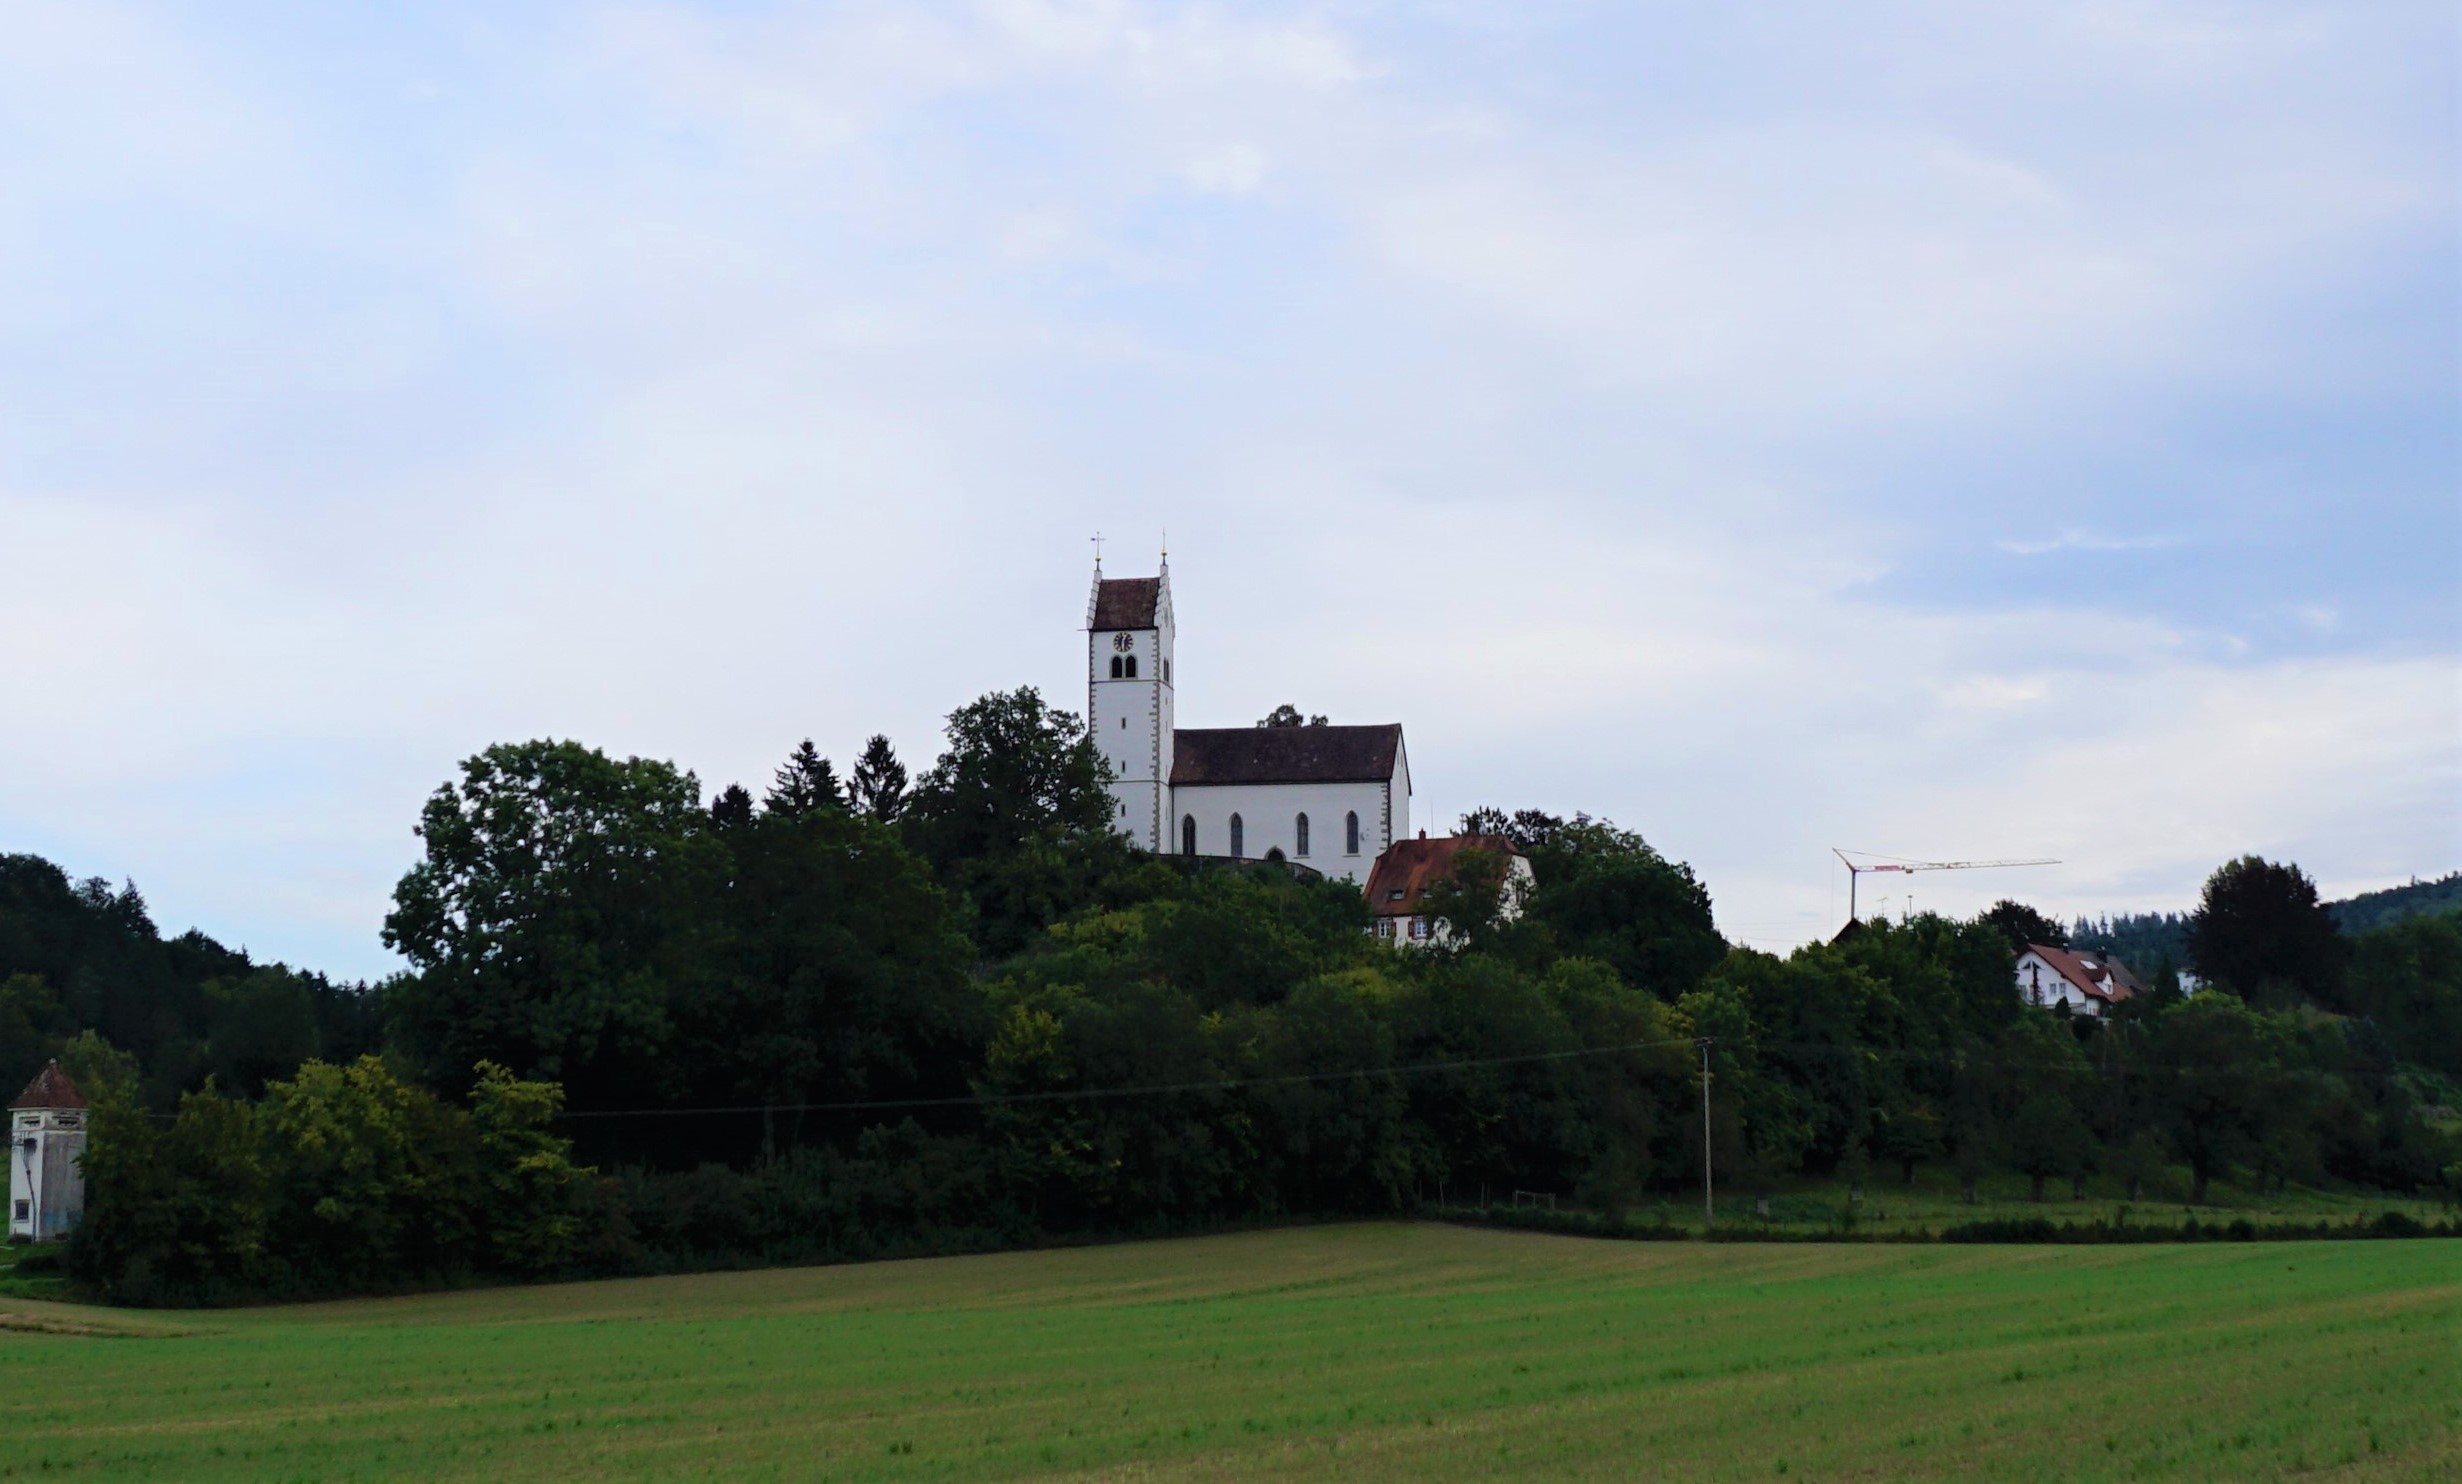 Kirche St. Verena in Roggenbeuren, Deggenhausertal.
